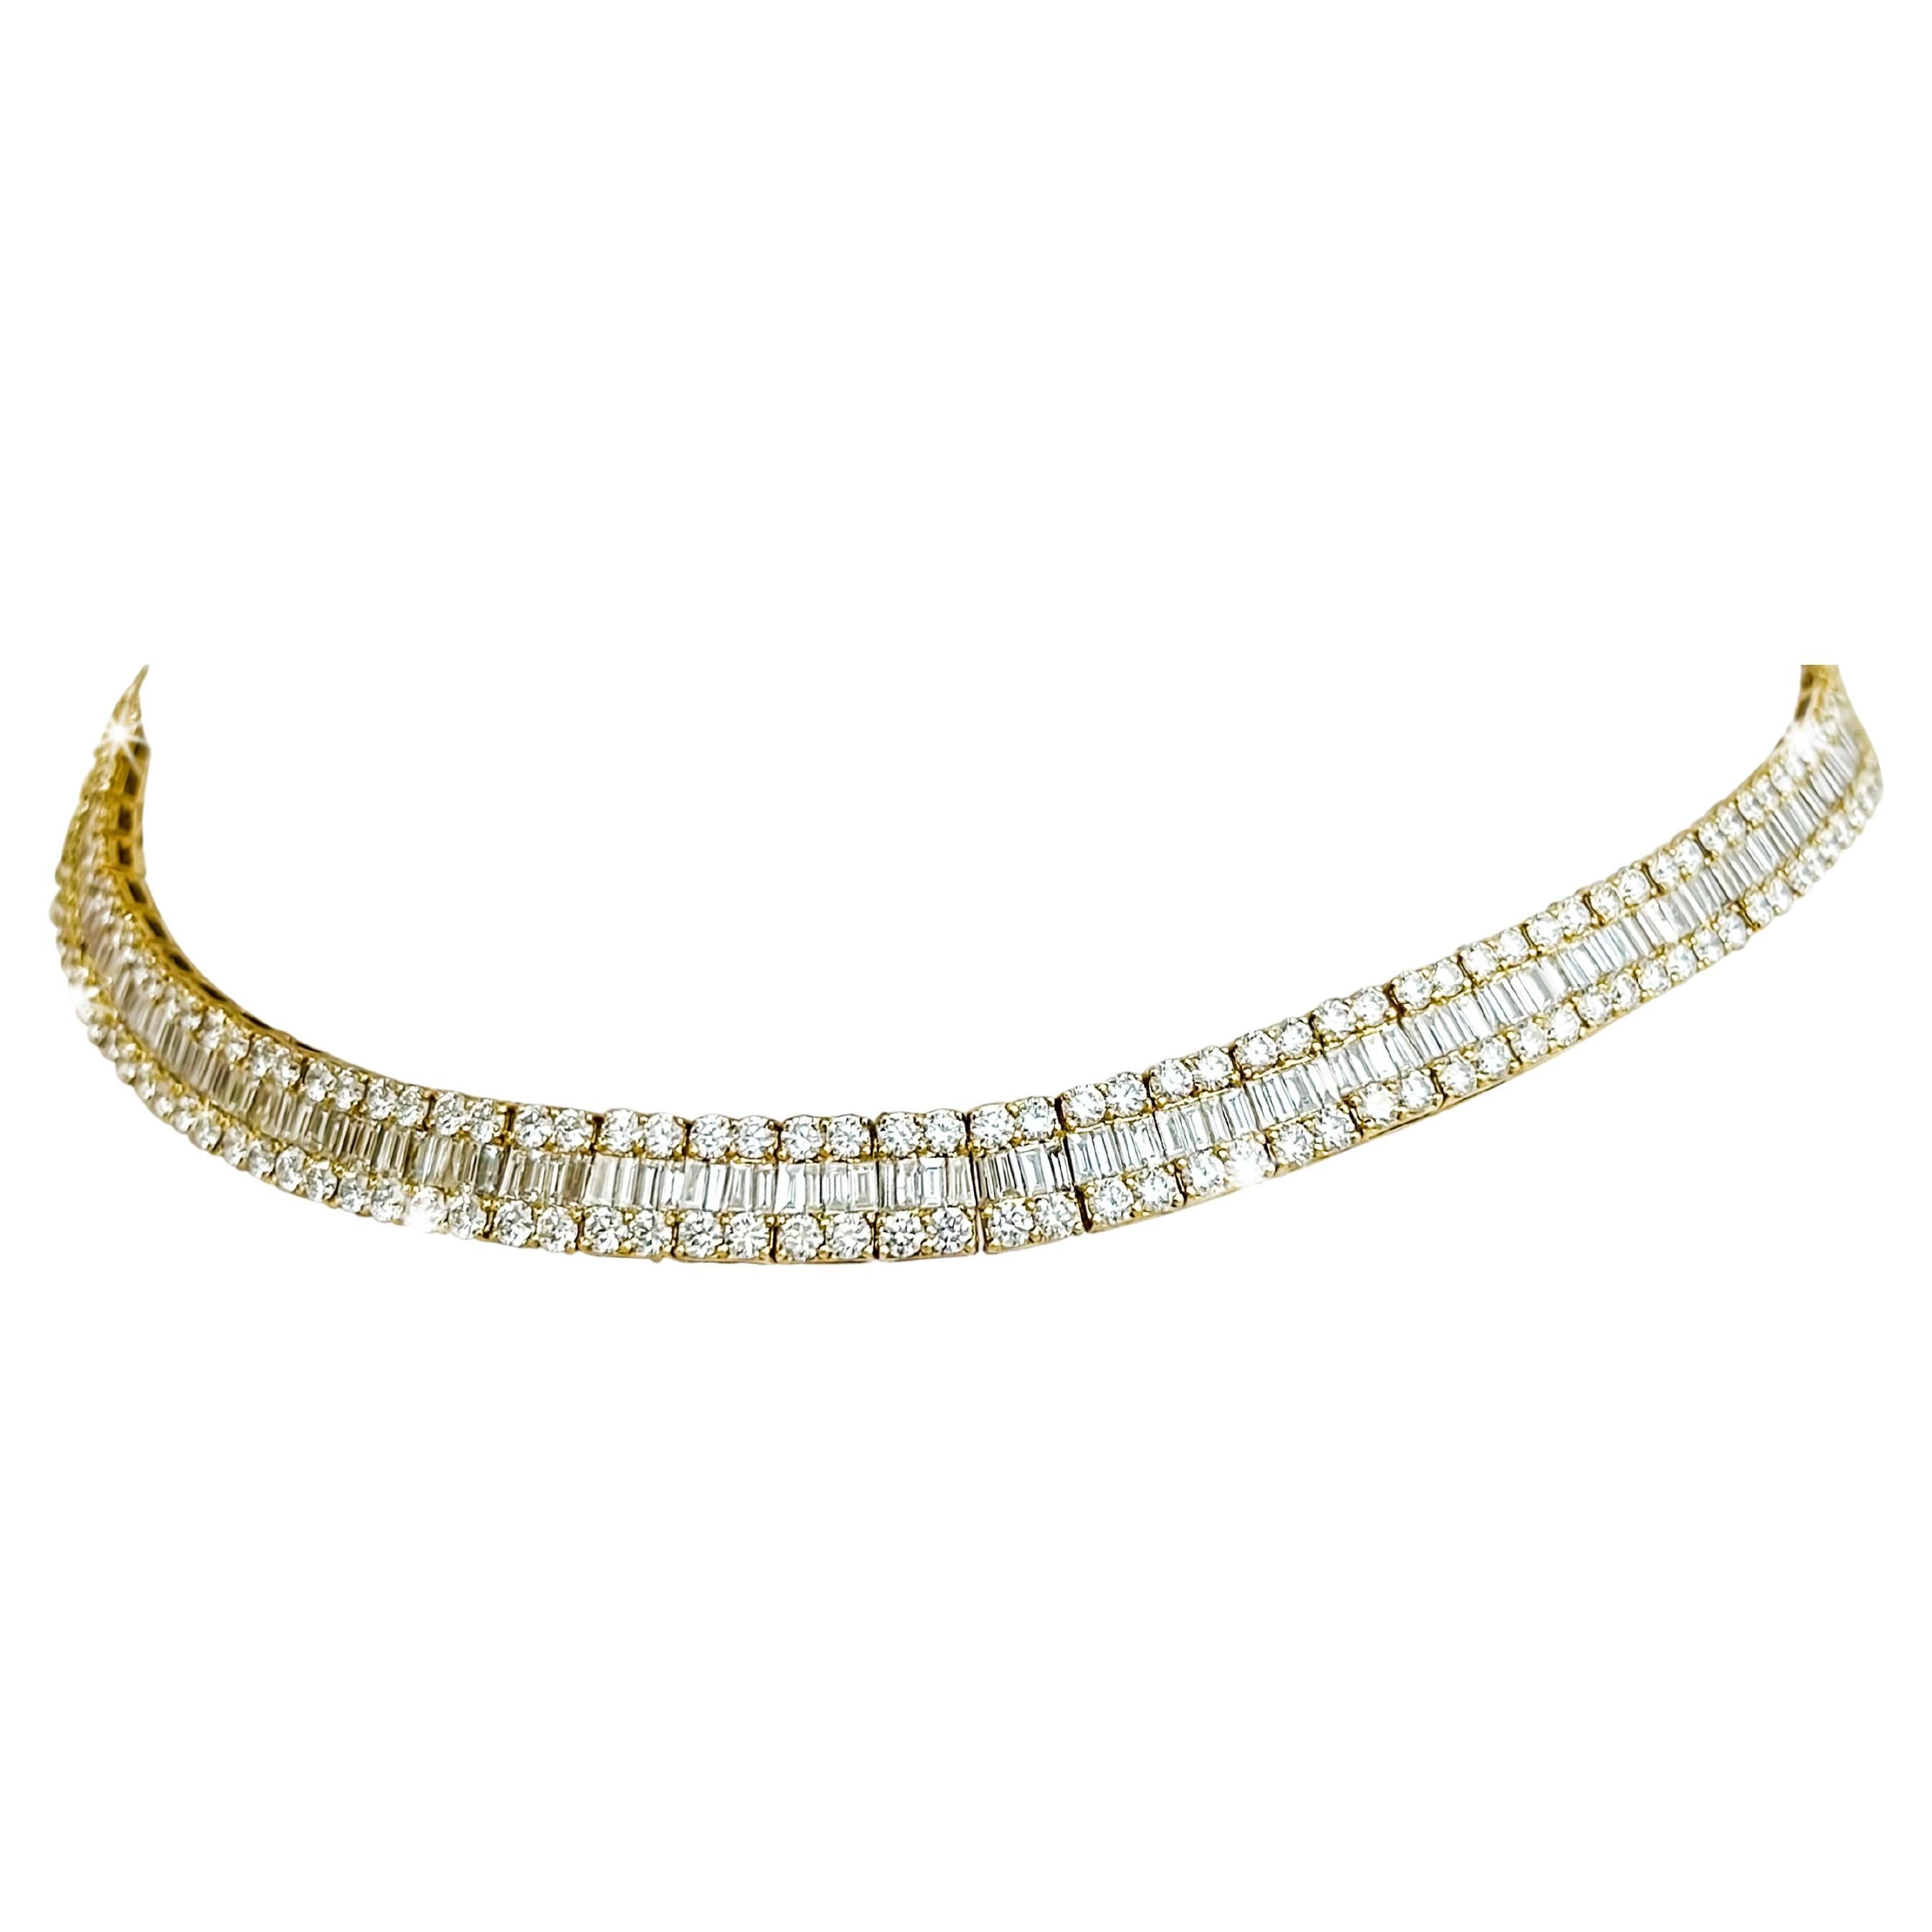 Eleanor's Diamond Necklace For Sale